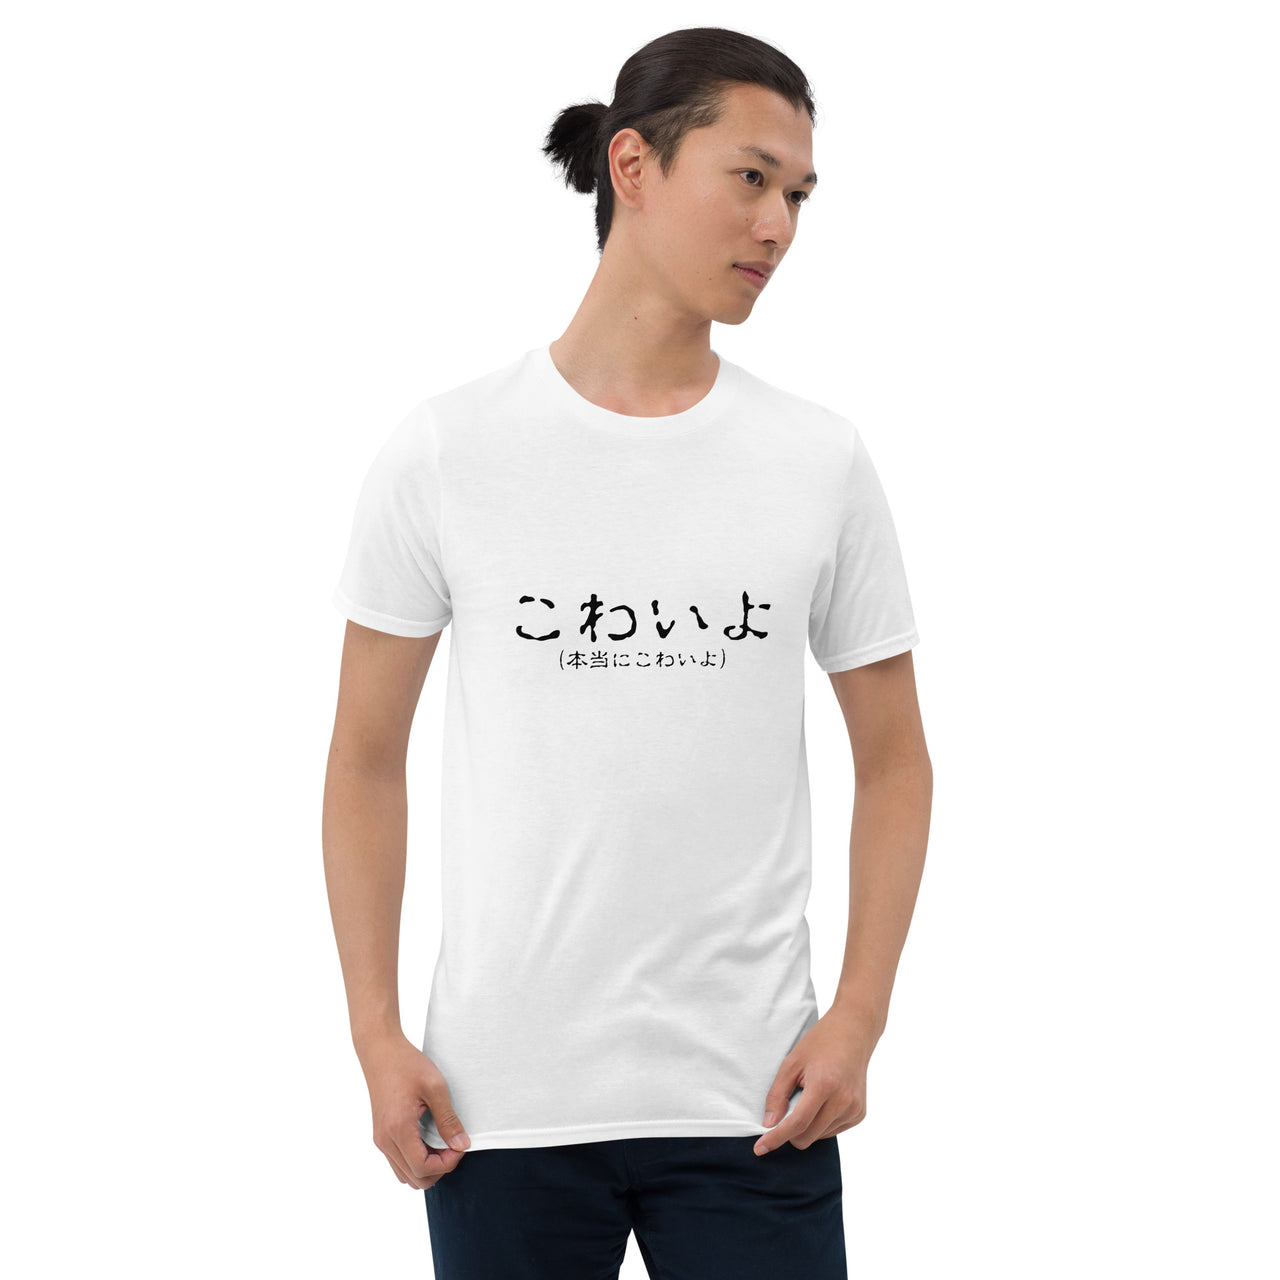 Kowai Spine-Chilling Japanese Short-Sleeve Unisex T-Shirt